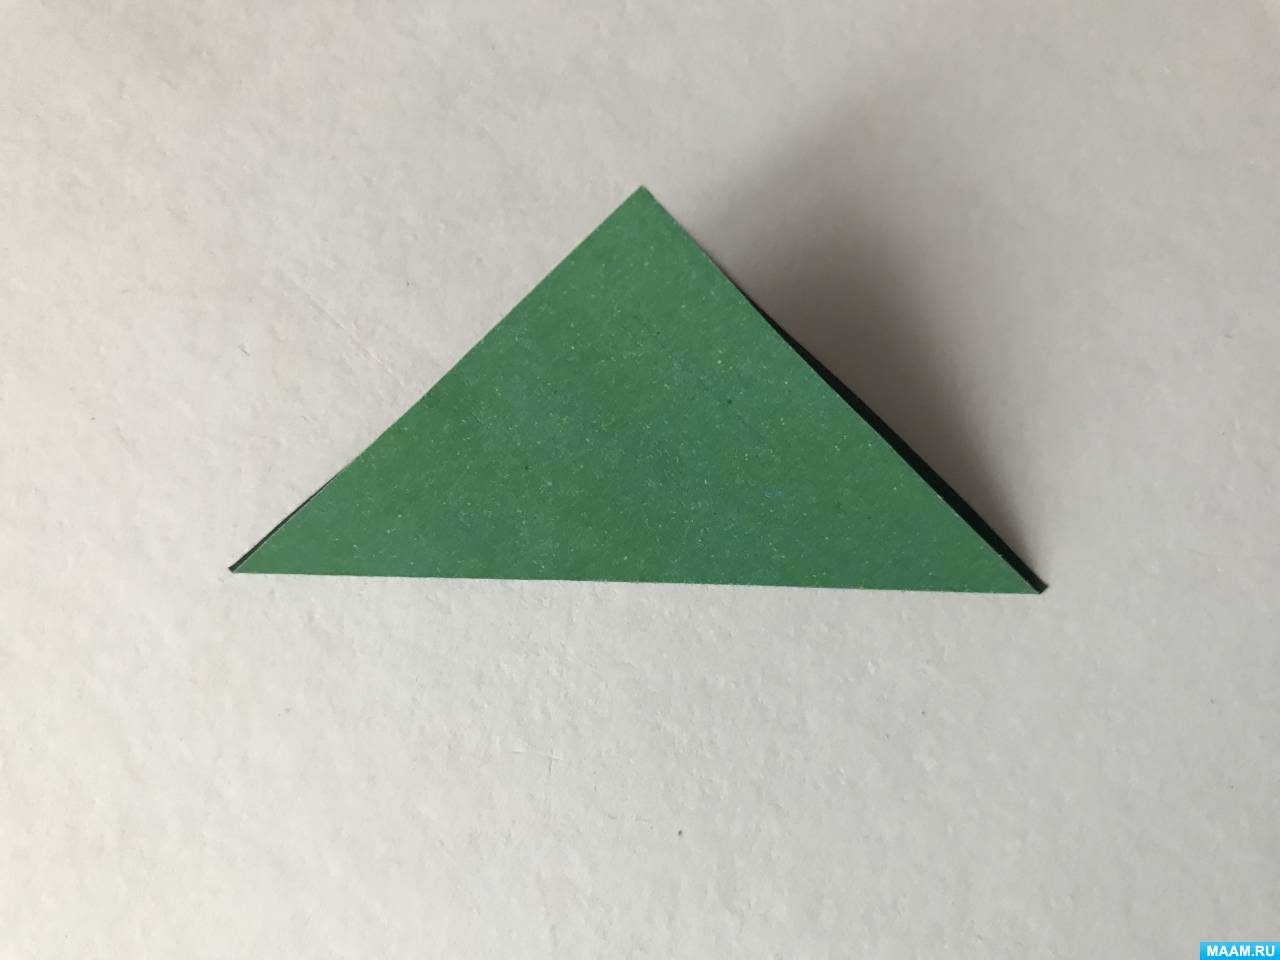 НОД. Конструирование из бумаги (оригами) 